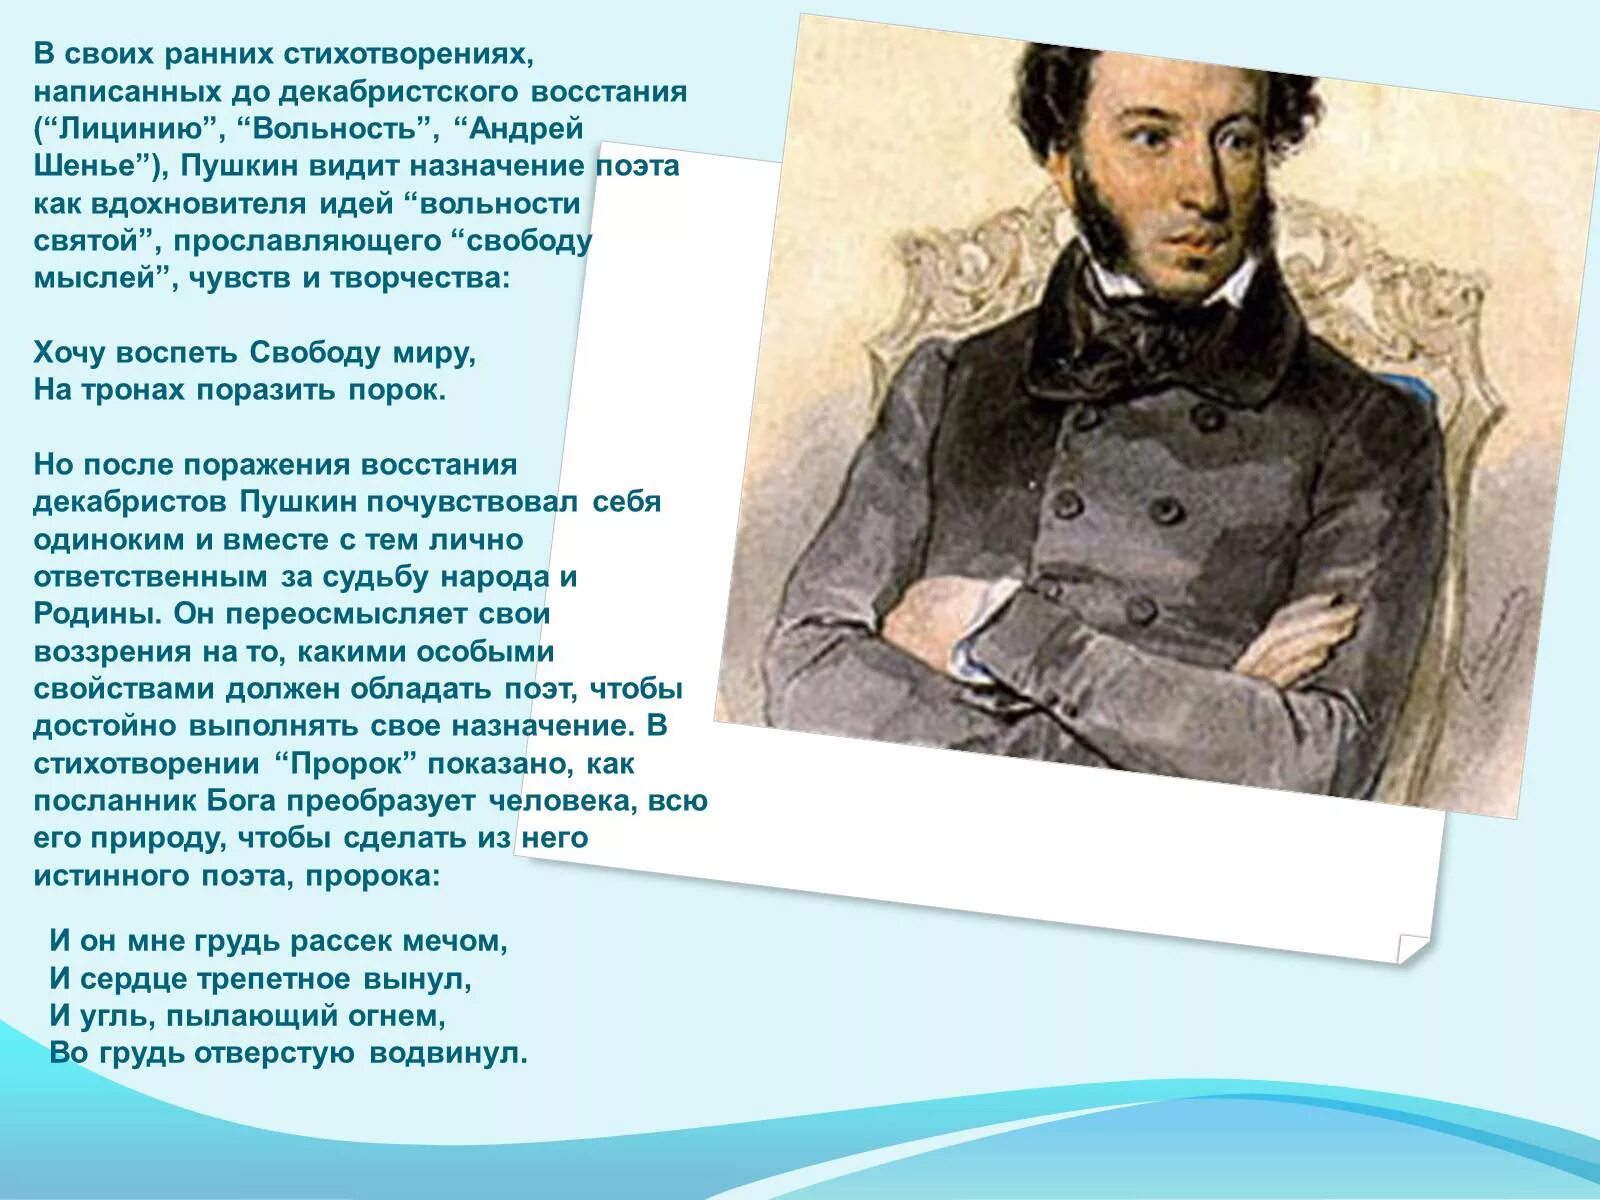 Андре Шенье Пушкин. Лицинию 1815 Пушкин. Андре Шенье Пушкин стихотворение. Каким размером было написано стихотворение